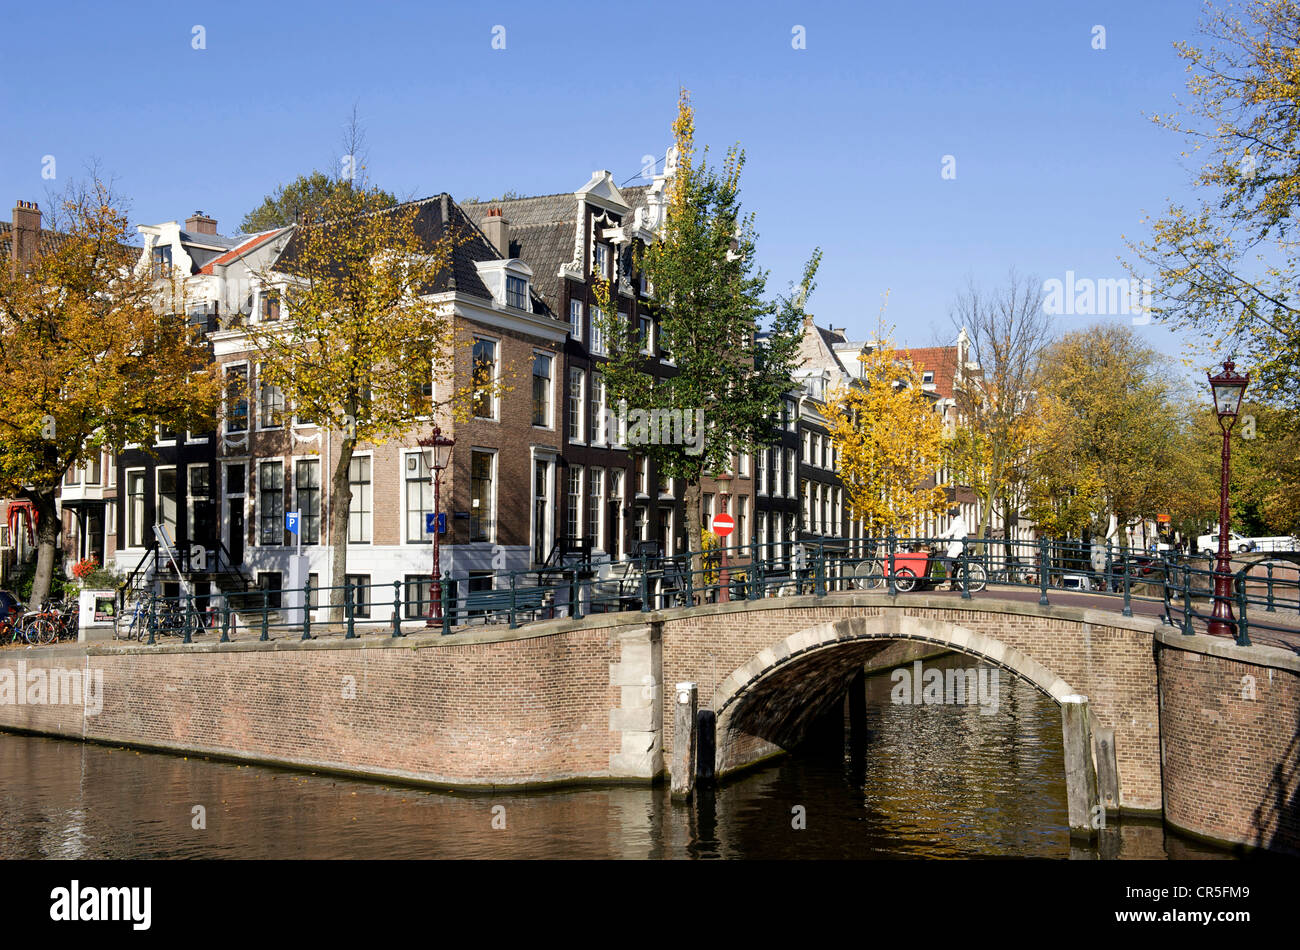 Niederlande, Amsterdam, Brücke bei den Winkel der Herengracht und Reguliersgracht Kanäle Stockfoto